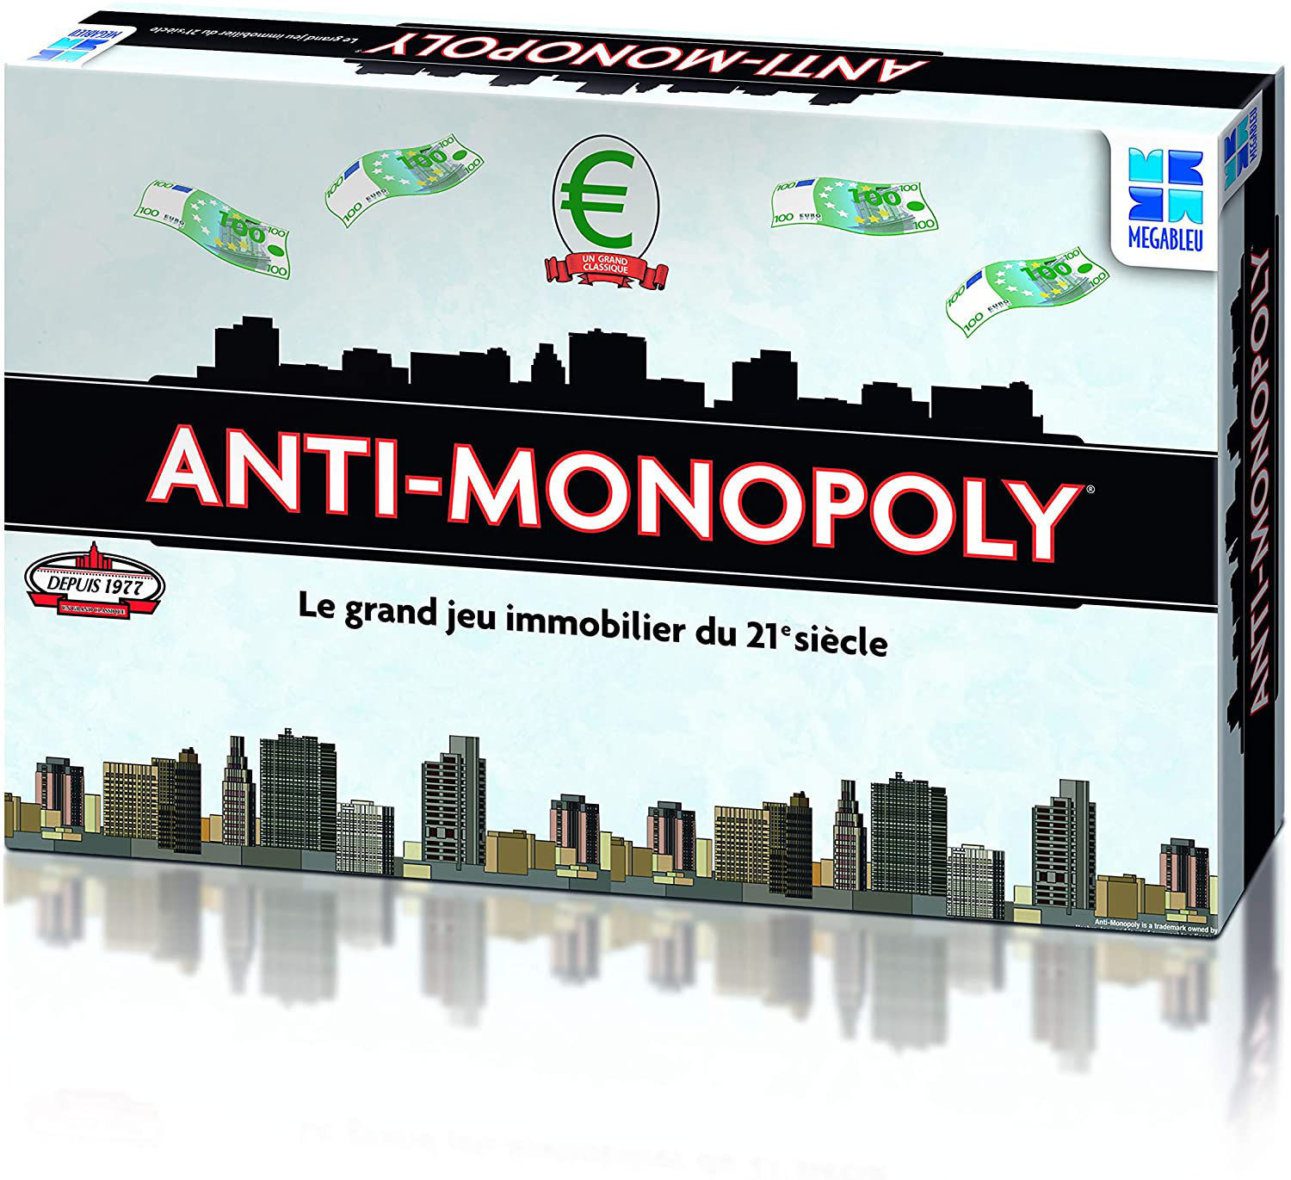 Anti monopoly